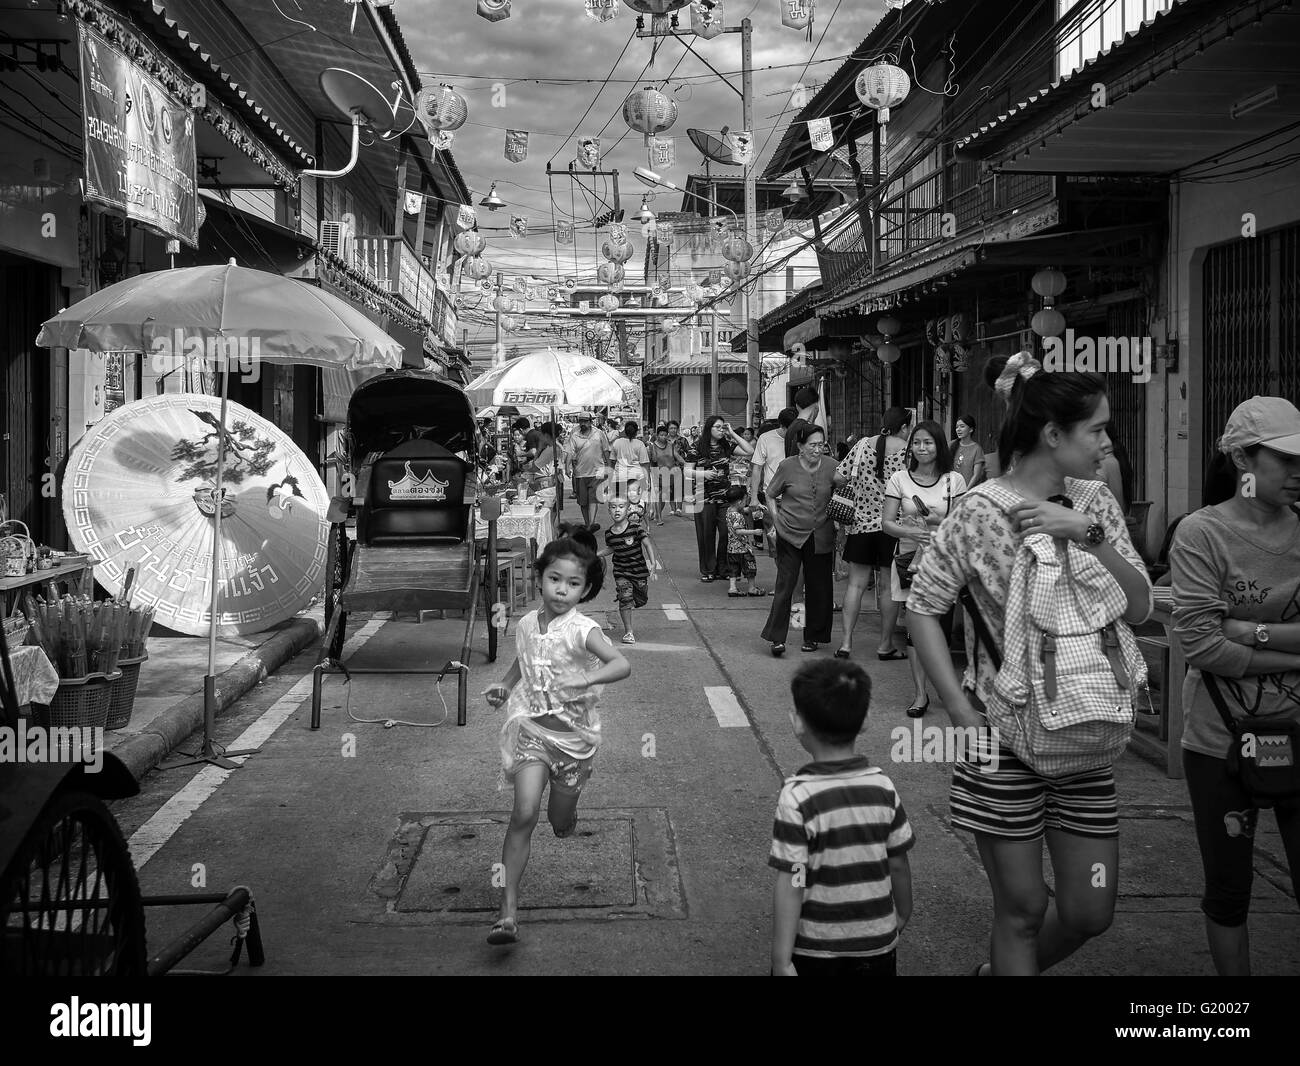 Straßenszene Thailand. Kinder spielen und Rennen durch die Menge. China Town Thailand S. E. Asien. Schwarzweiß-Fotografie Stockfoto